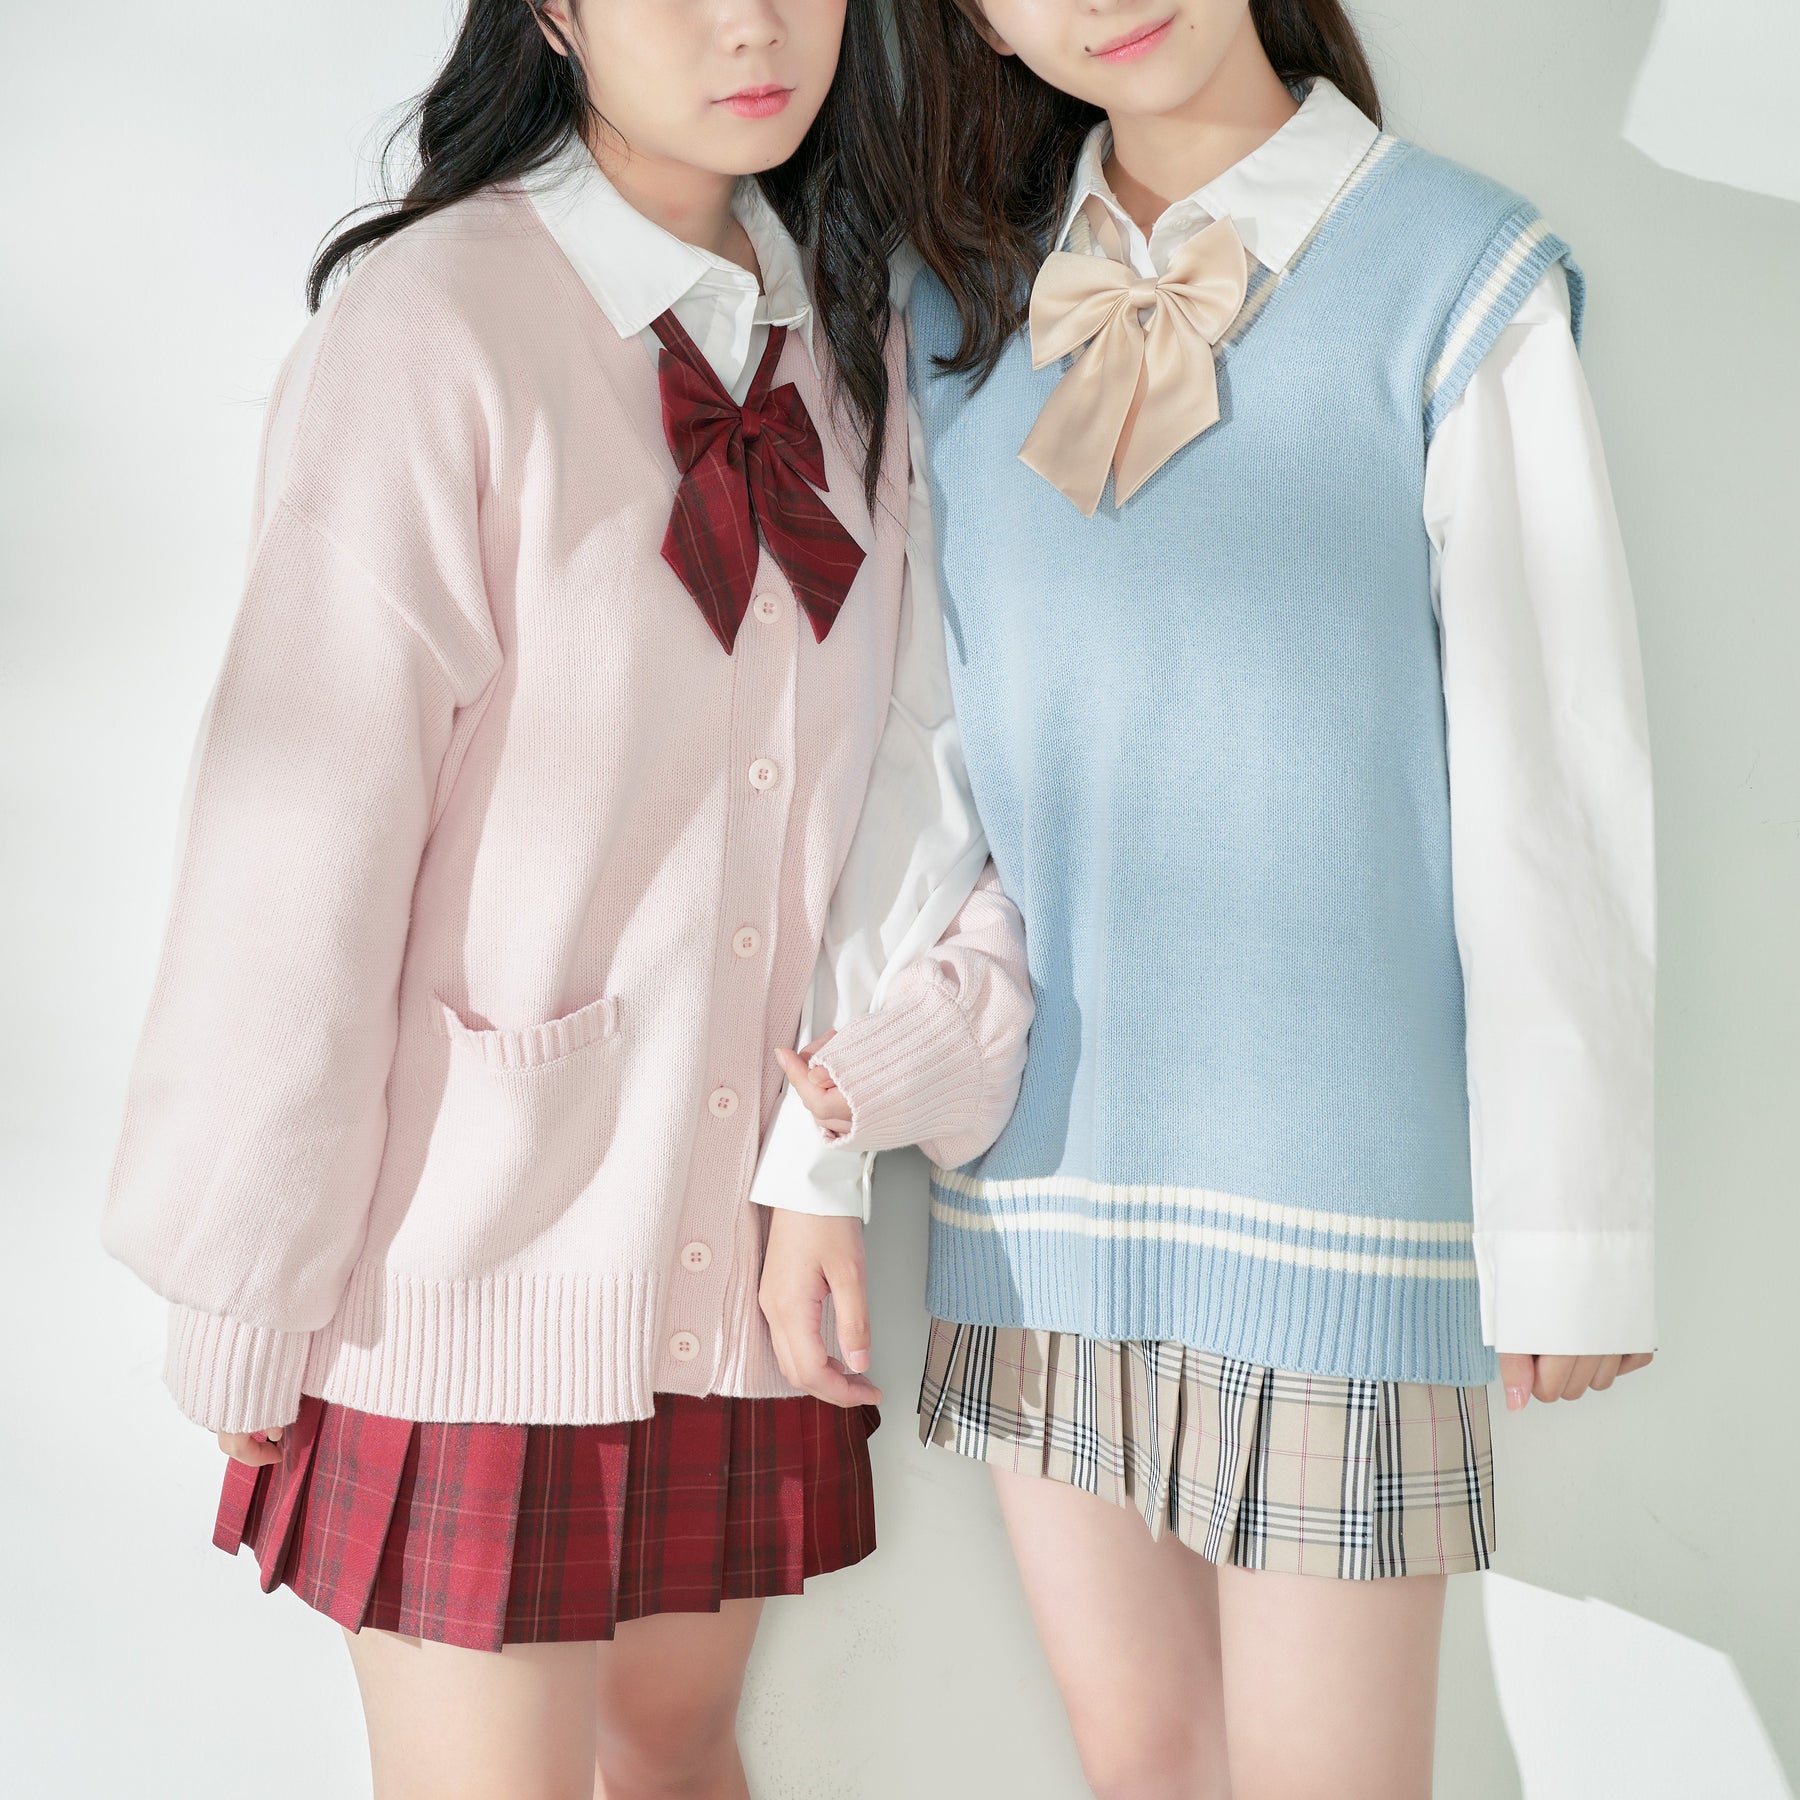 22年秋最新 憧れの韓国制服がプチプラで なんちゃって制服コーデ特集 ウィゴー公式サイト ウェブマガジン Wego Jp